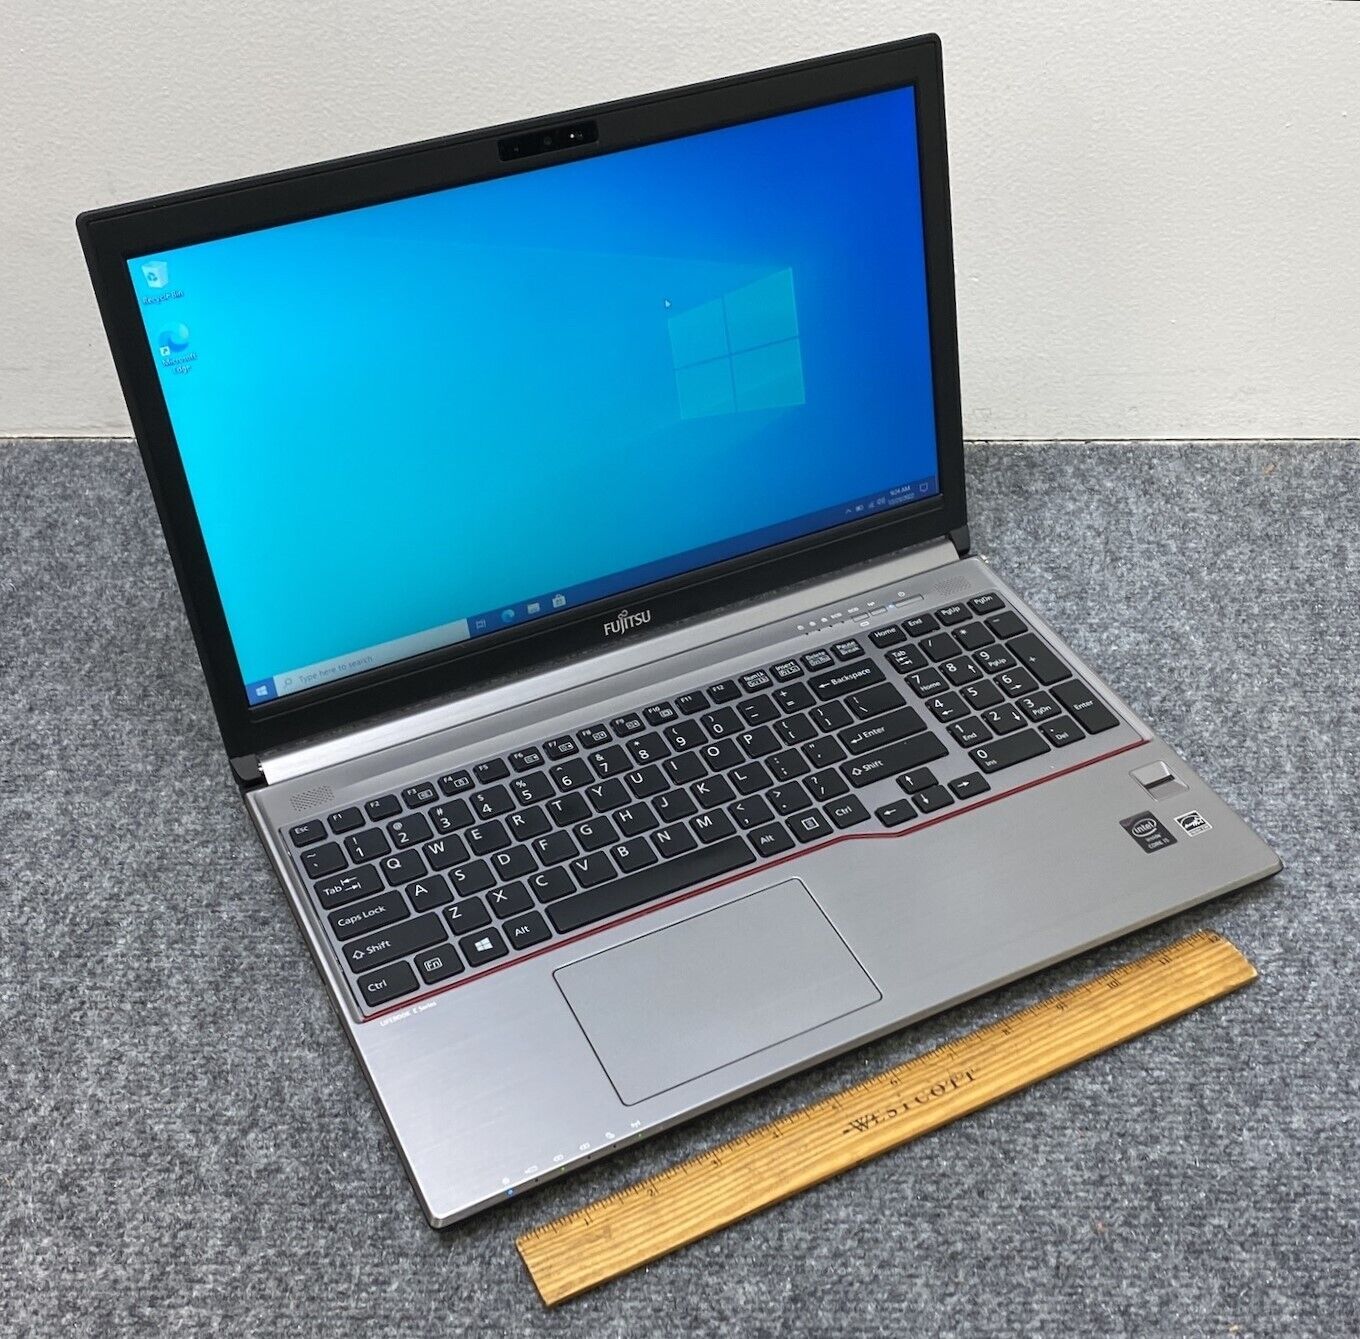 Fujitsu LifeBook E754 15.6” Laptop i5-4200M, 4 GB RAM, 128 GB SSD